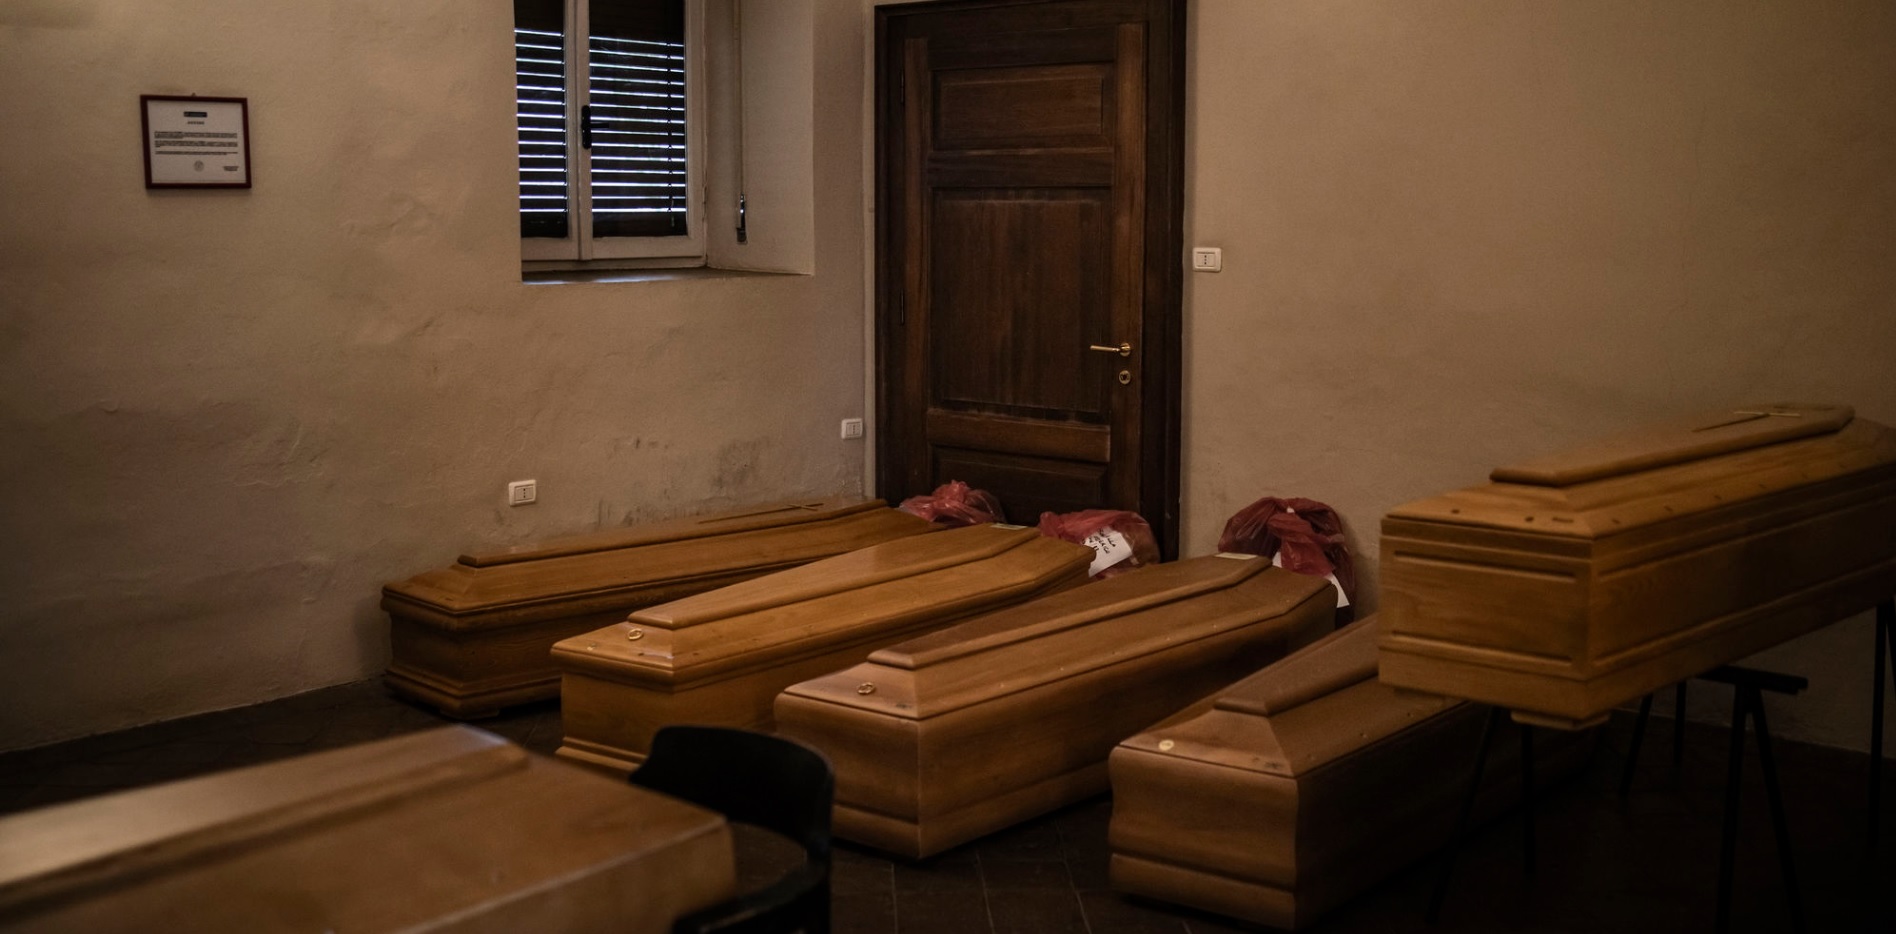 Alzano Lombardo, 16. mart U bolničkim mrtvačnicima kovčezi su naslagani u praznim prostorijama. Crvene plastične kese, u kojima su lični predmeti, označavaju žrtve koronavirusa.